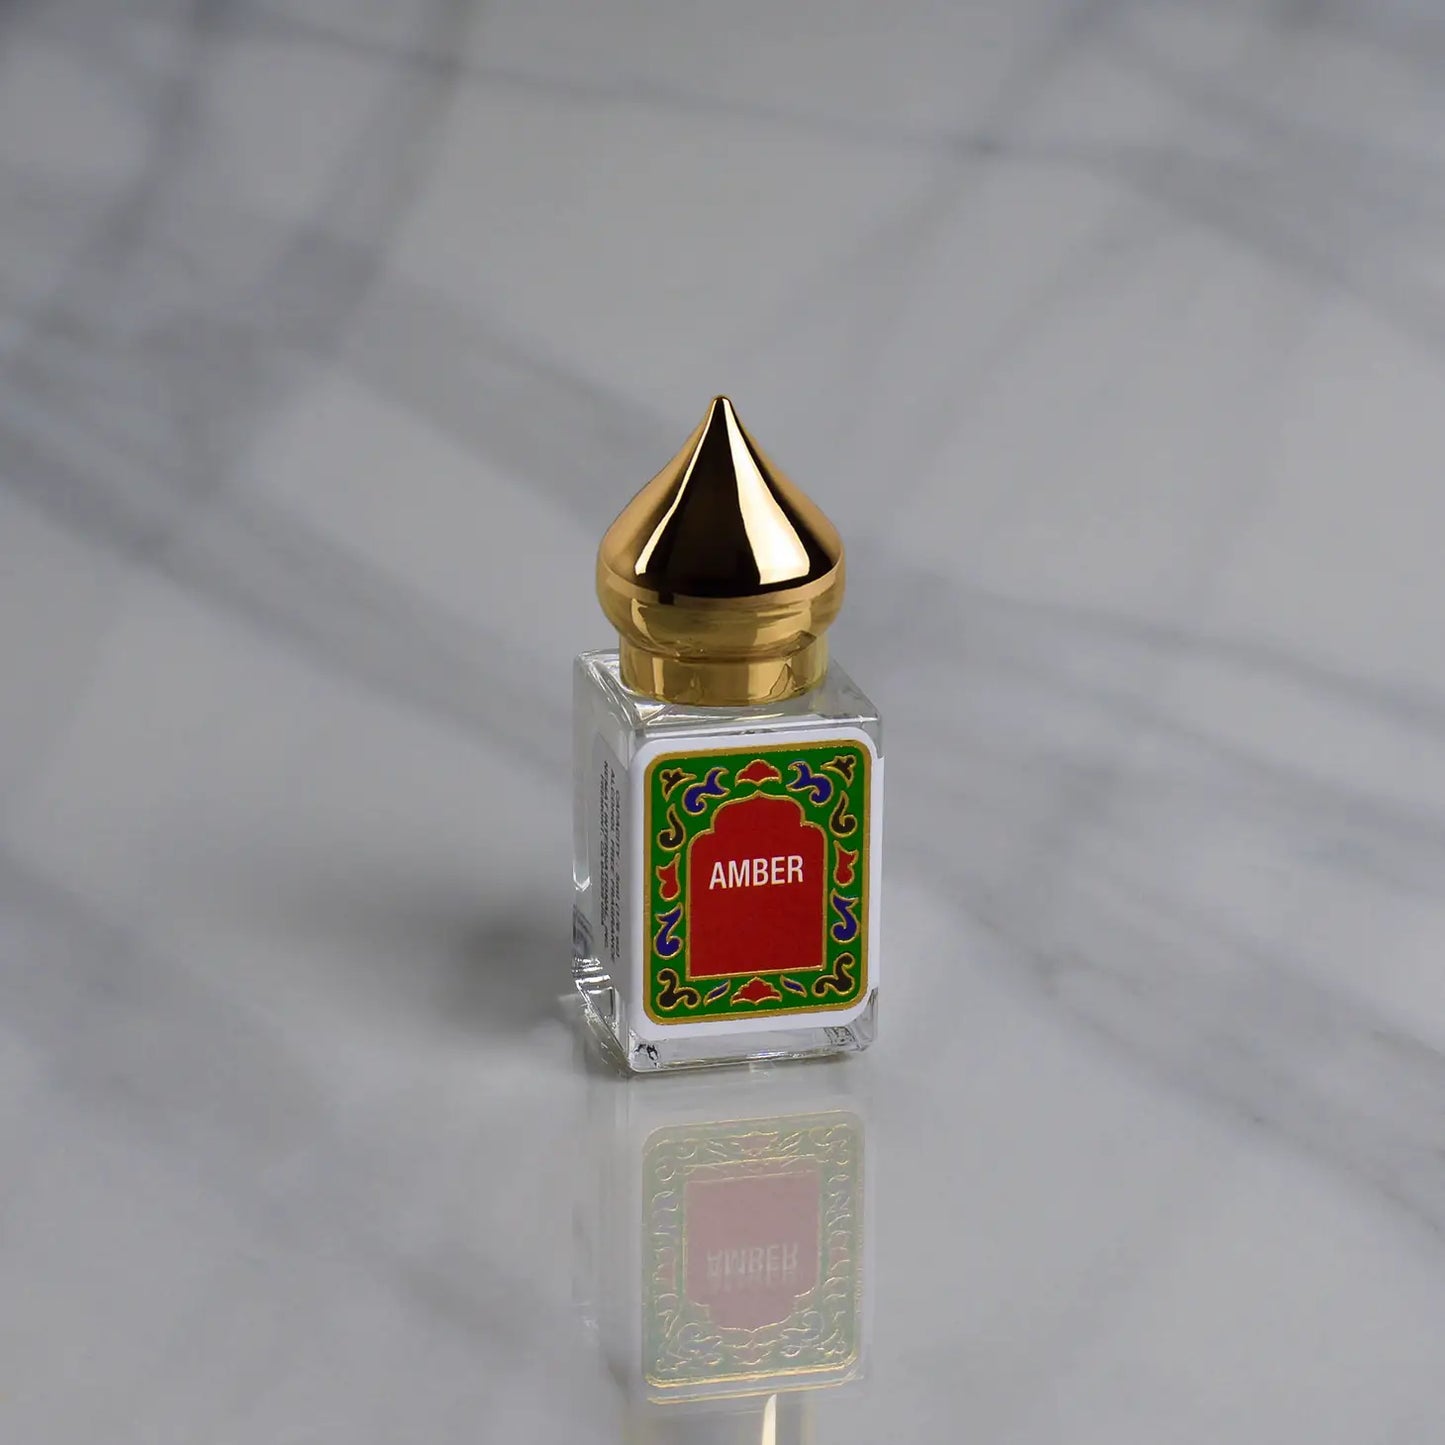 The AMBER Perfume